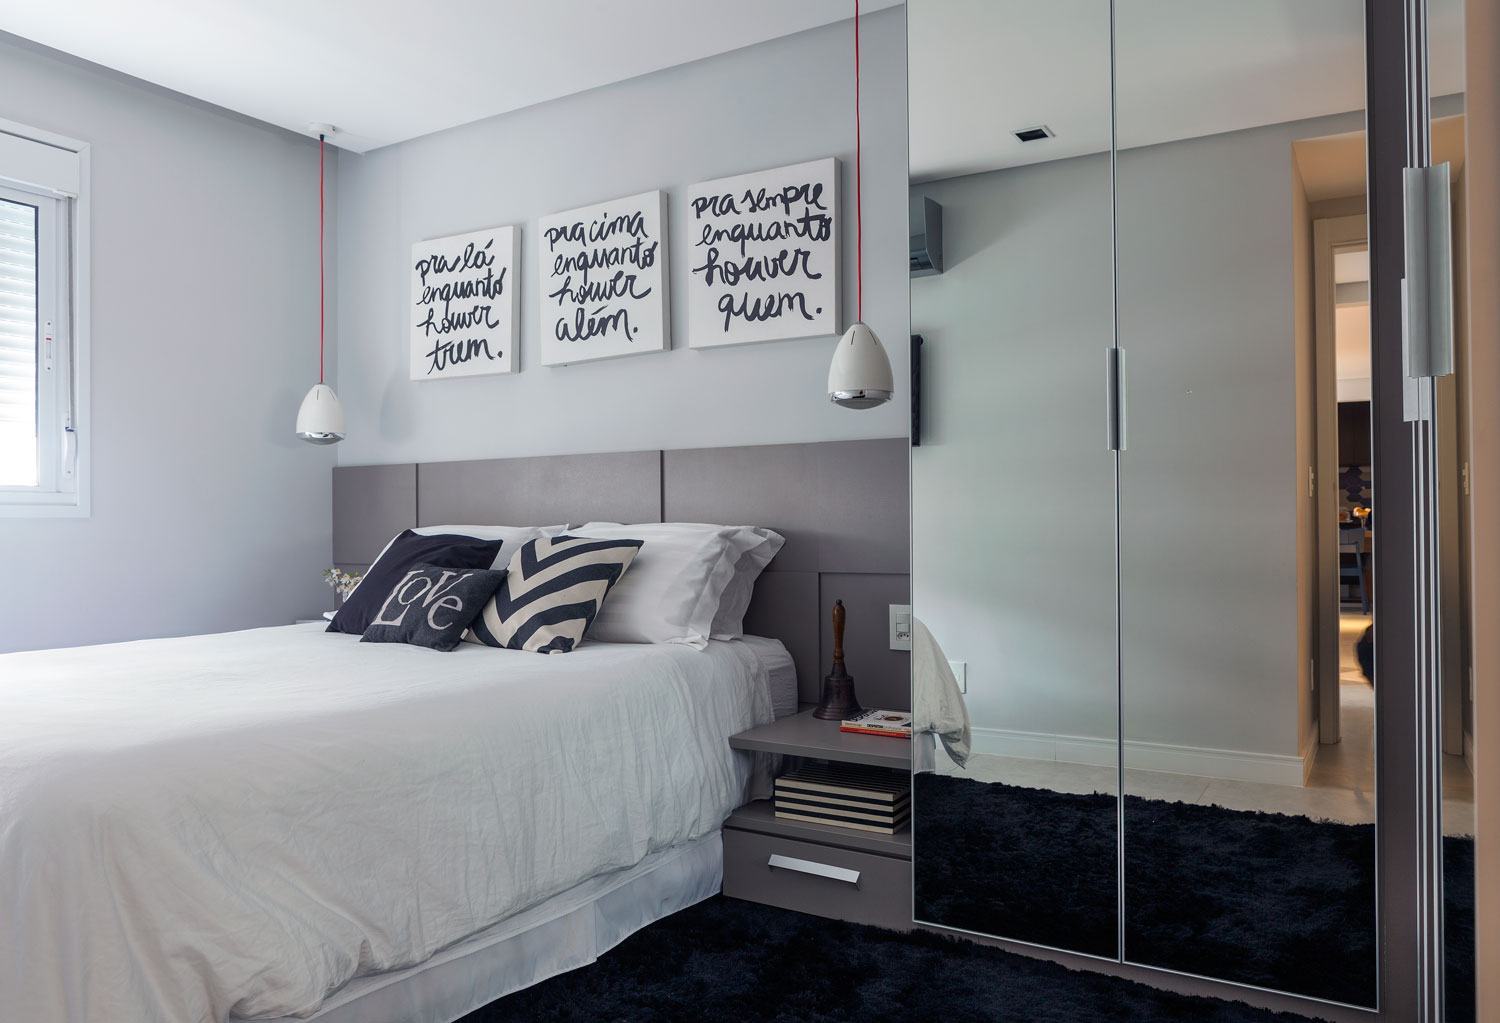 A composição das cores com o espelho do armário formou um quarto moderno e elegante!